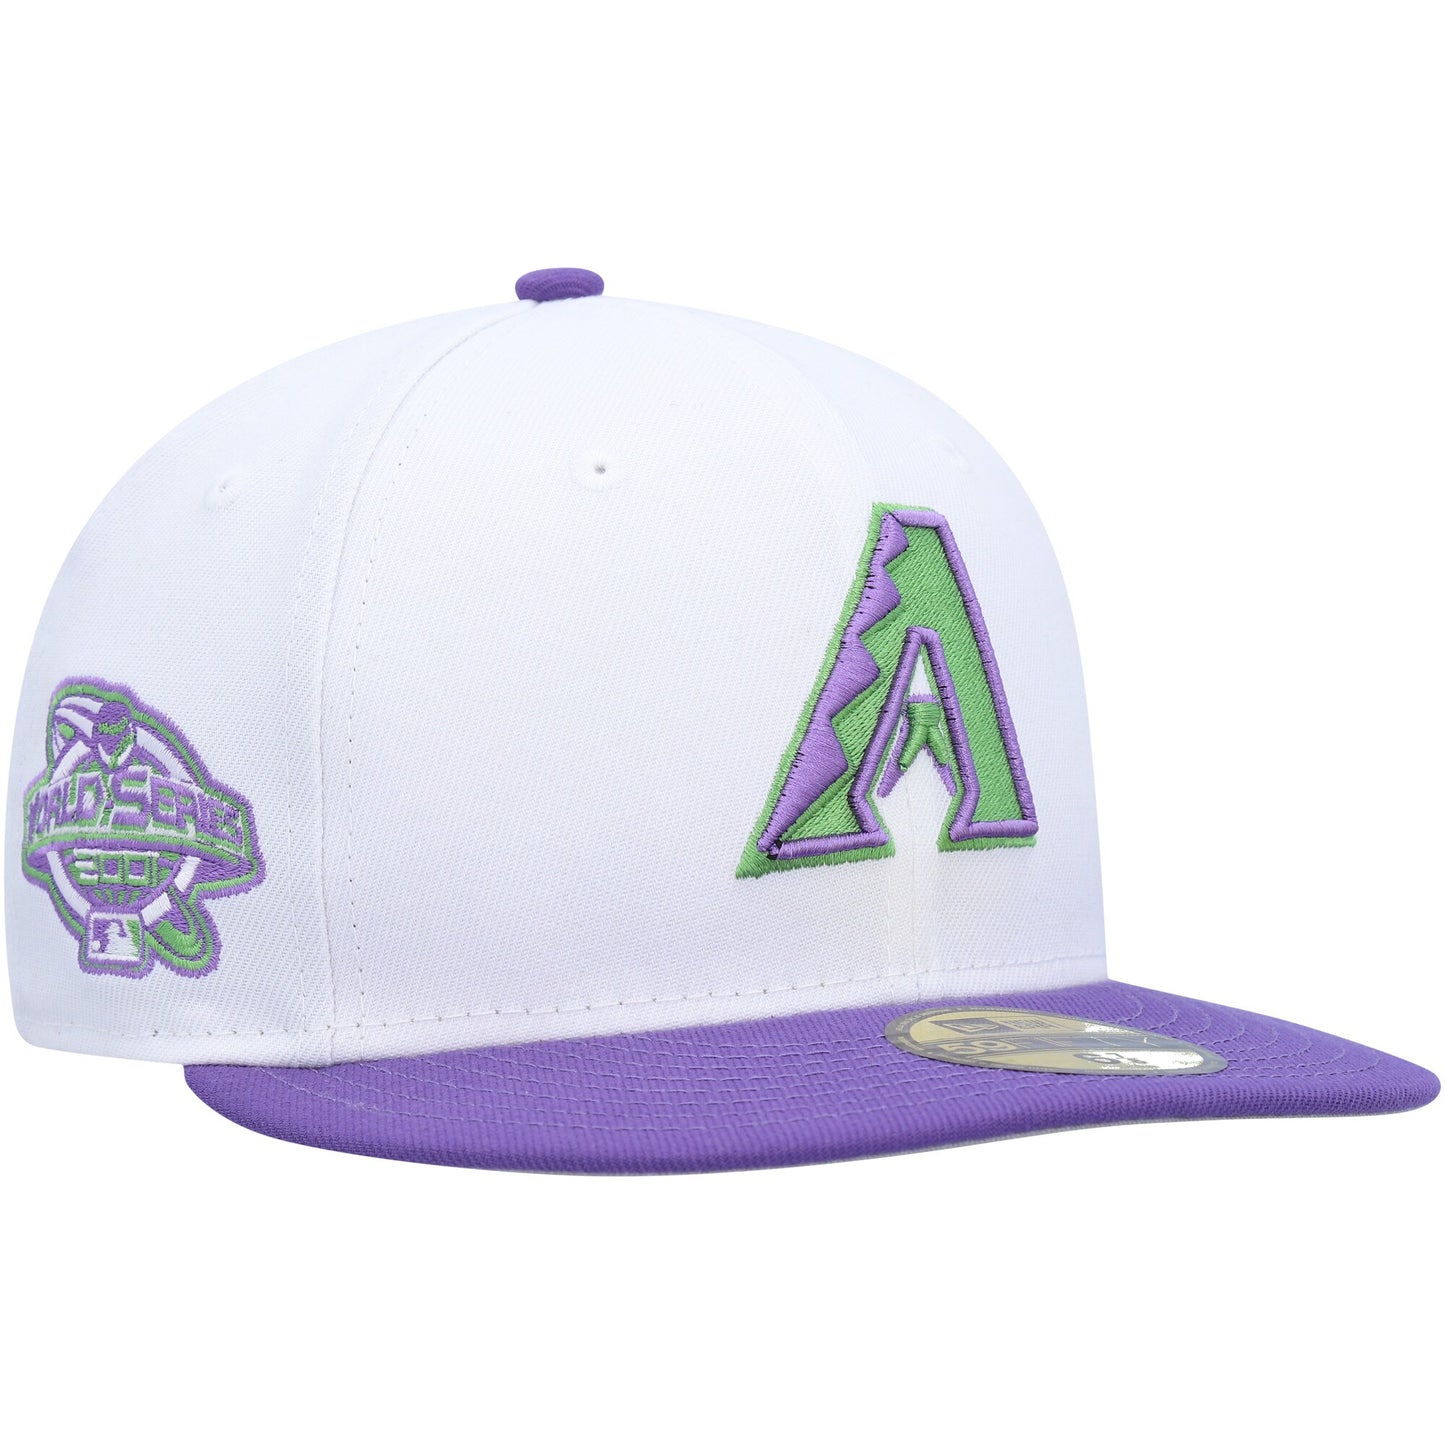 Arizona Diamondbacks New Era Side Patch 59FIFTY Fitted Hat - White